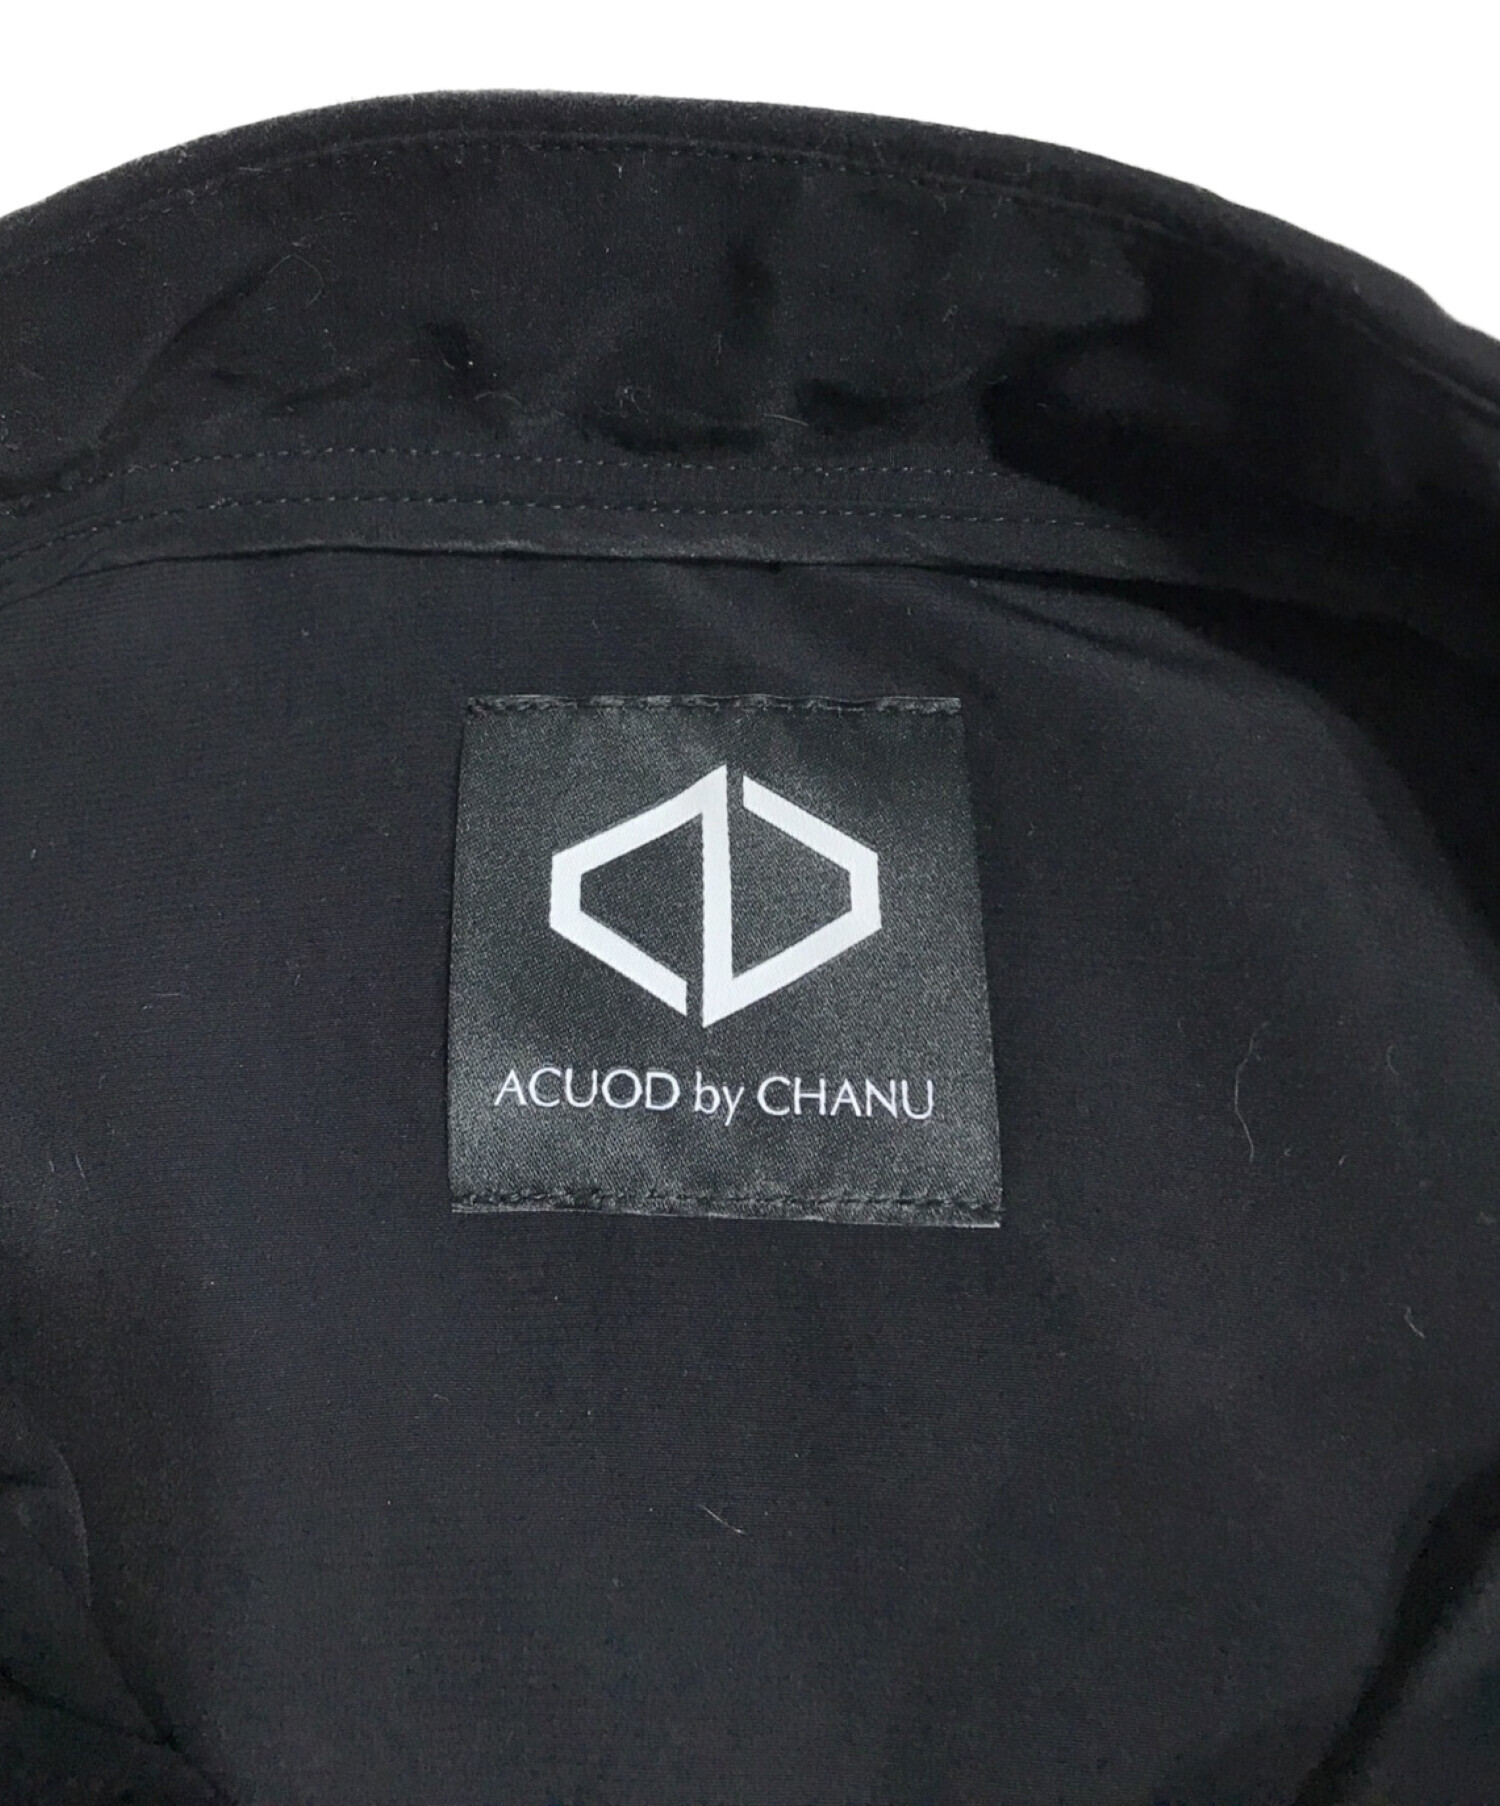 ACUOD by CHANU (アクオド バイ チャヌ) ジップディティールオールインワン ブラック サイズ:FREE